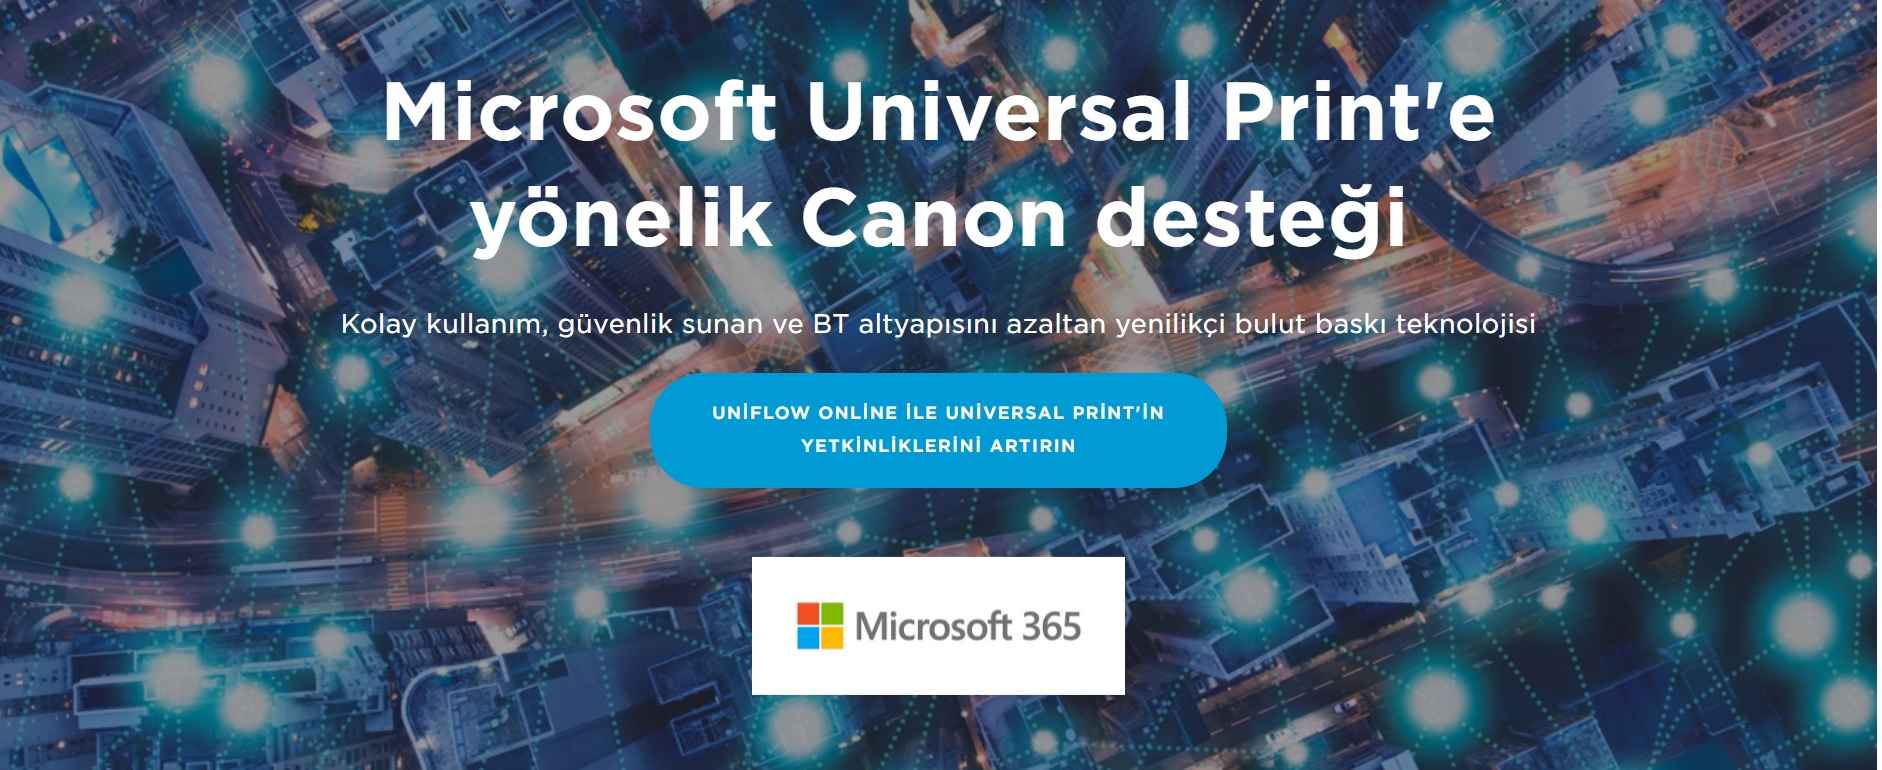 Microsoft Universal Print'e yönelik Canon desteği